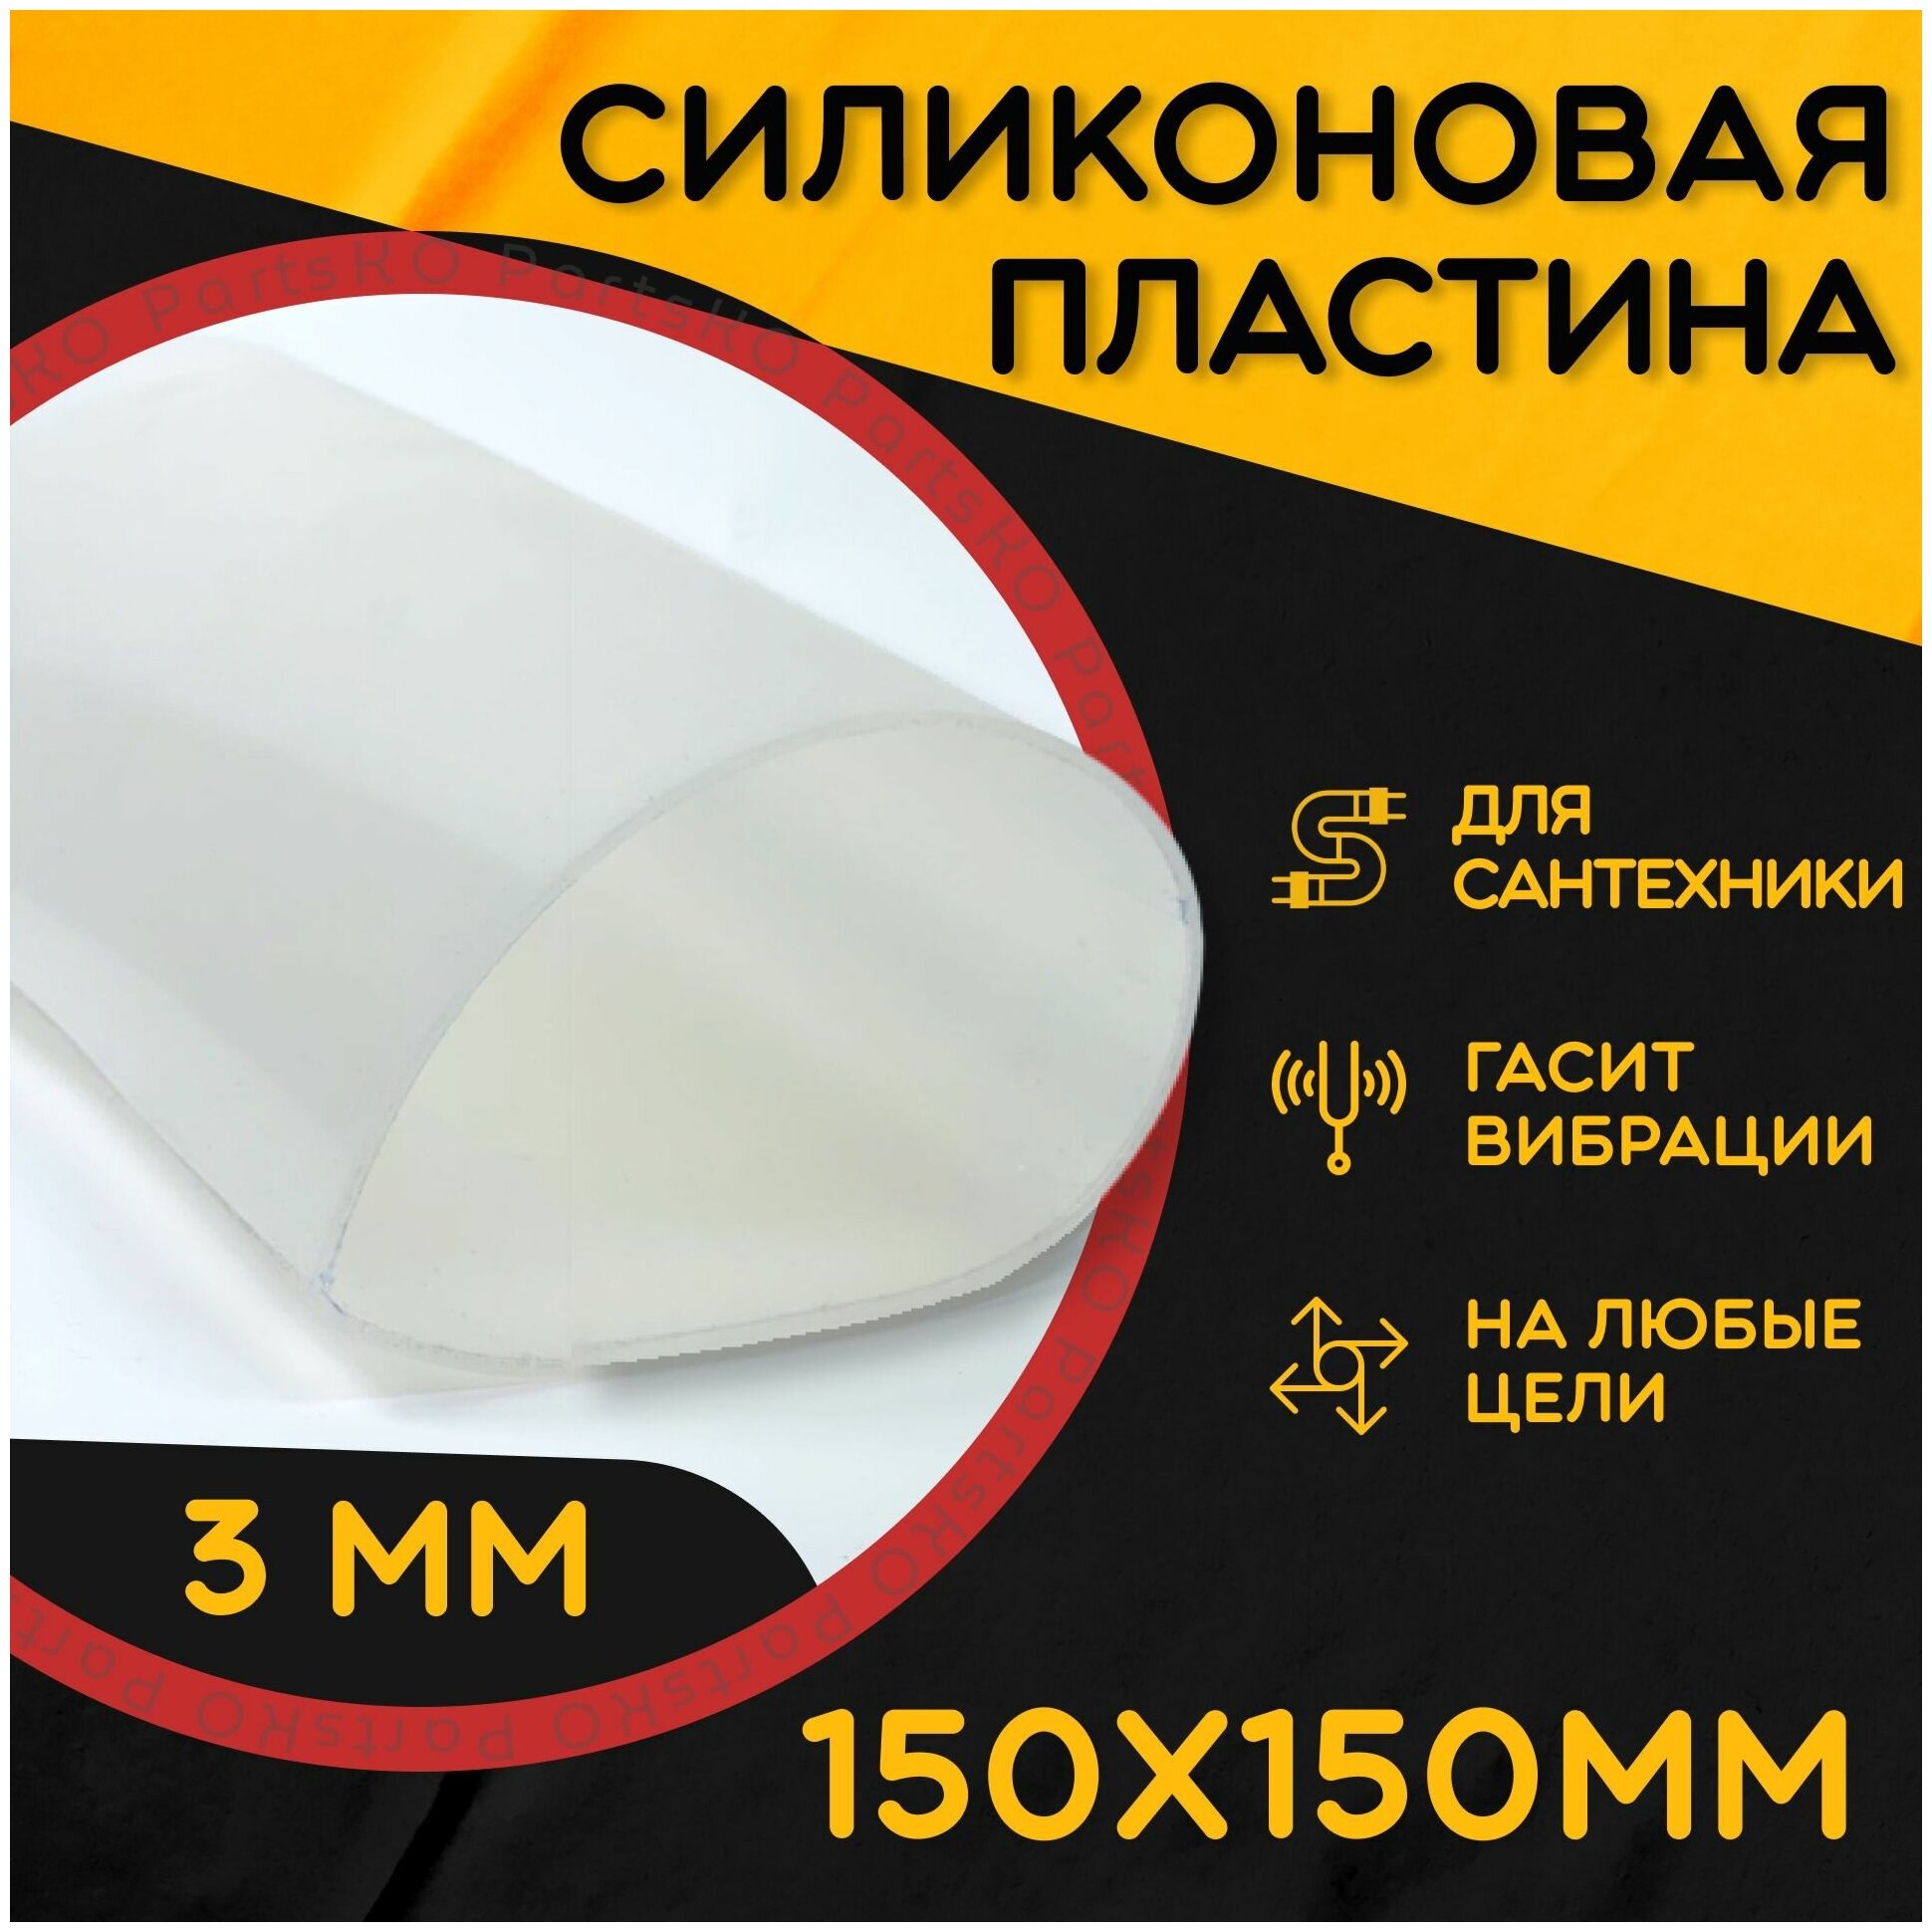 Силиконовая резина термостойкая. Толщина 3 мм. Размер 150х150 мм / Уплотнительная прокладка / Силиконовая пластина белого цвета.